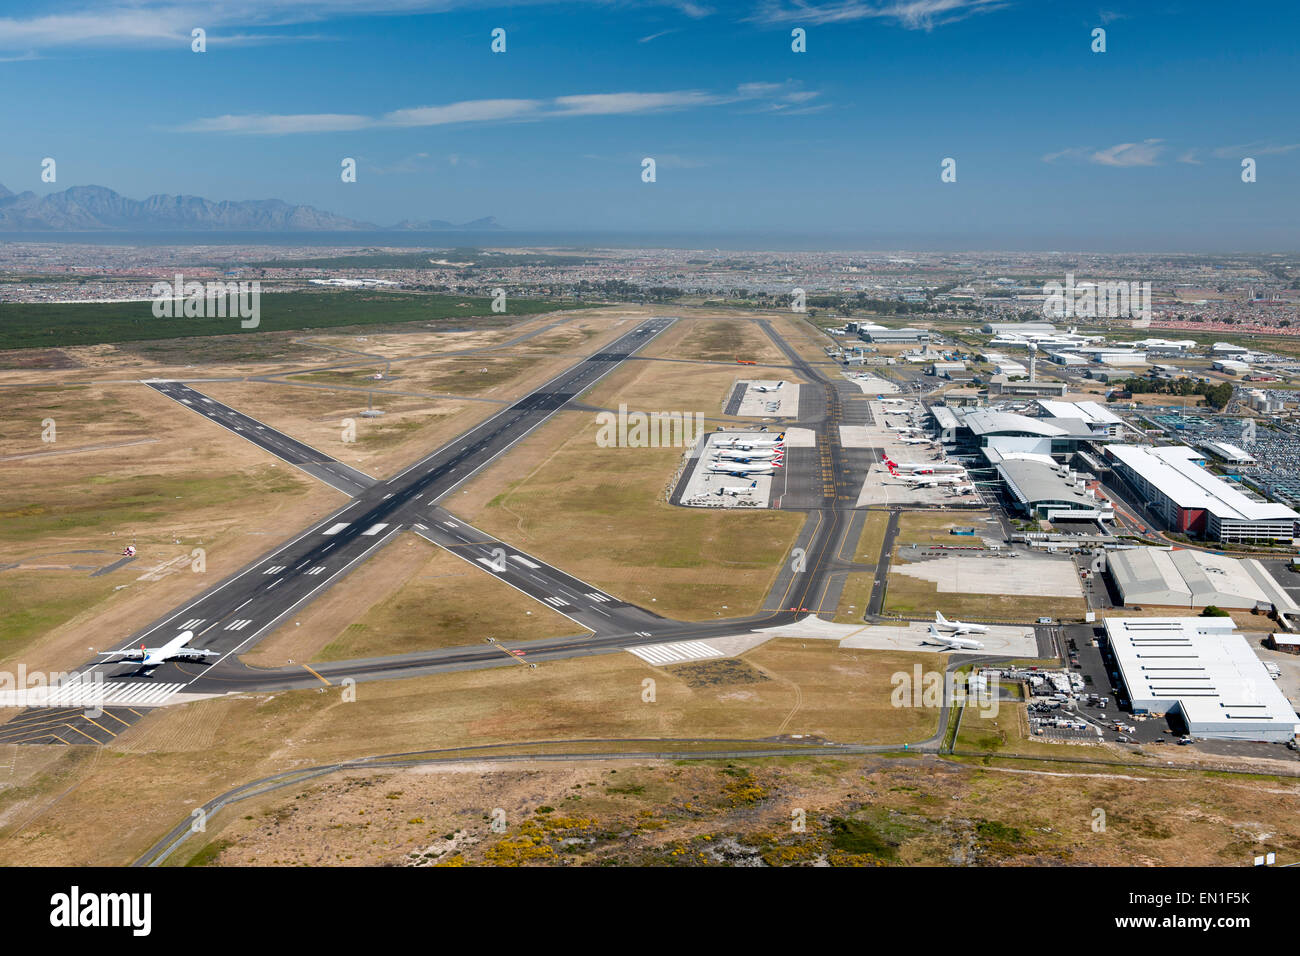 Vista aérea del aeropuerto internacional de Ciudad del Cabo, Sudáfrica. Foto de stock